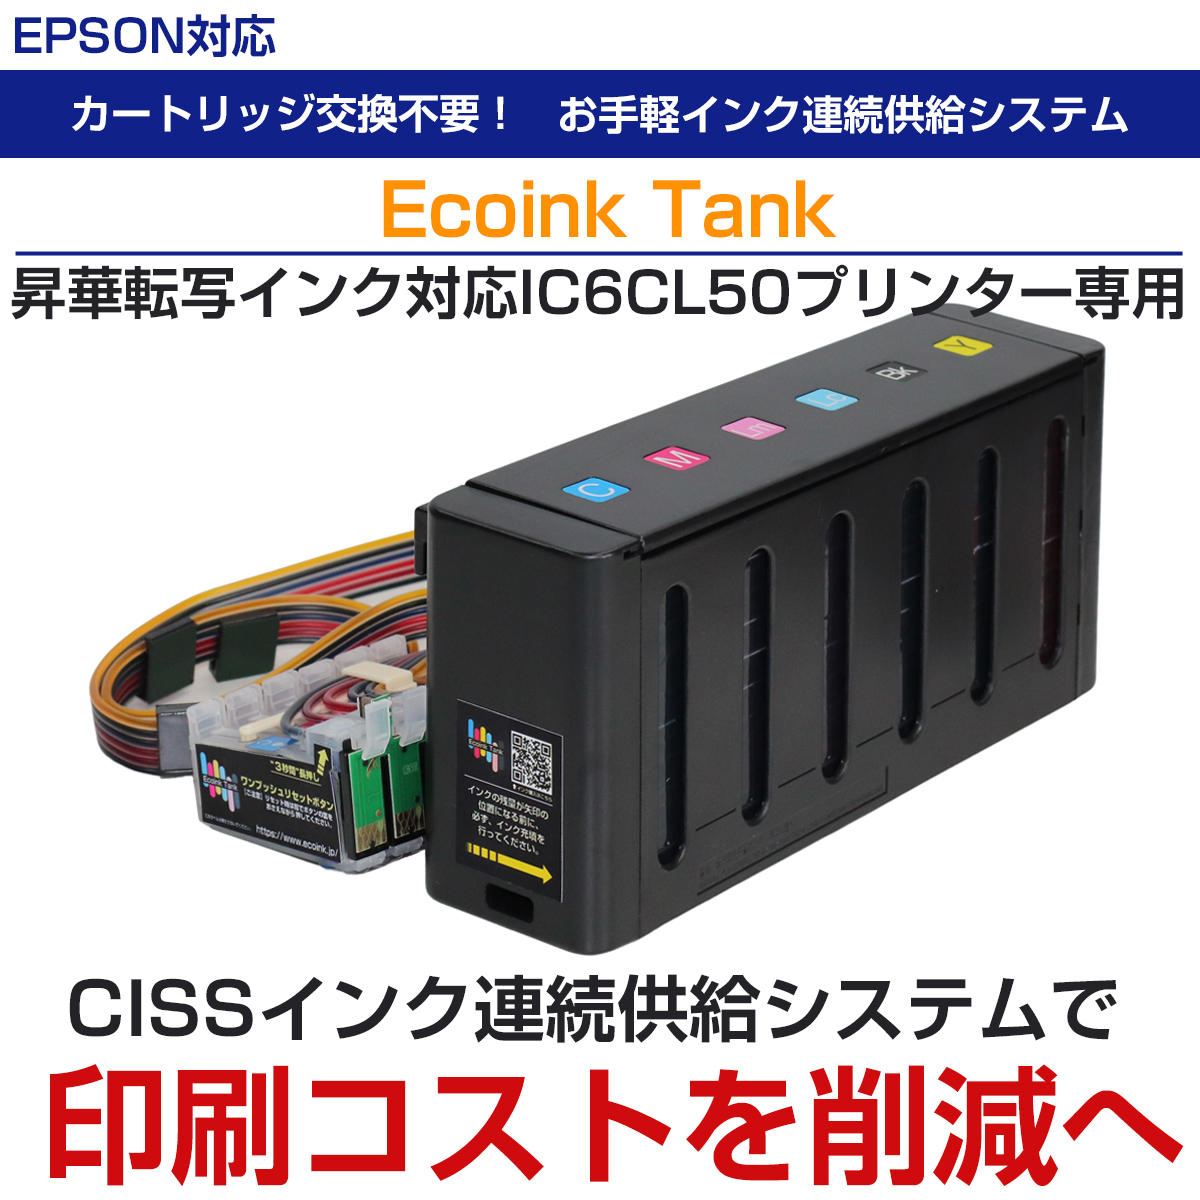 エコでタンク式のインクシステム 昇華転写インク版 CISS BOXタイプ 6色インク IC6CL50 昇華転写インク対応エプソンプリンターに使える  EPSON 印刷コスト削減